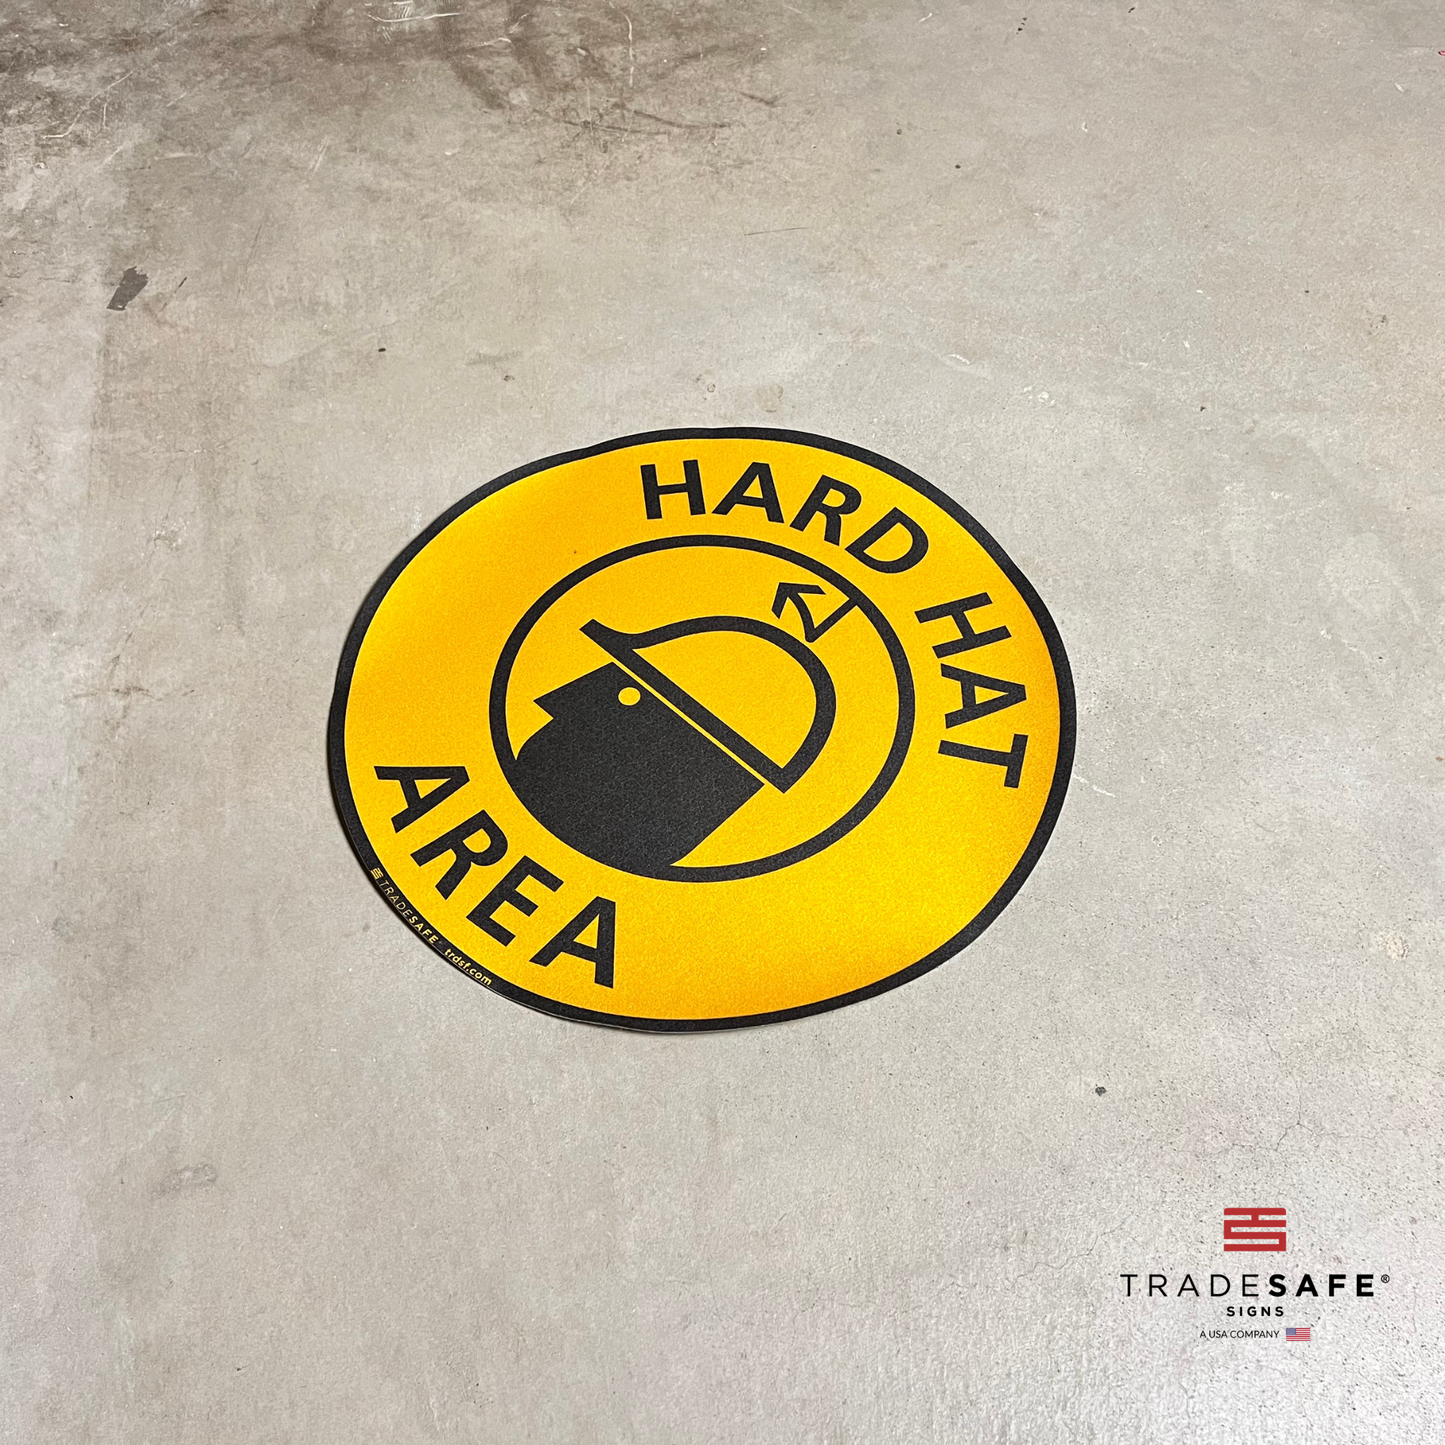 hard hat area sign vinyl sticker on floor